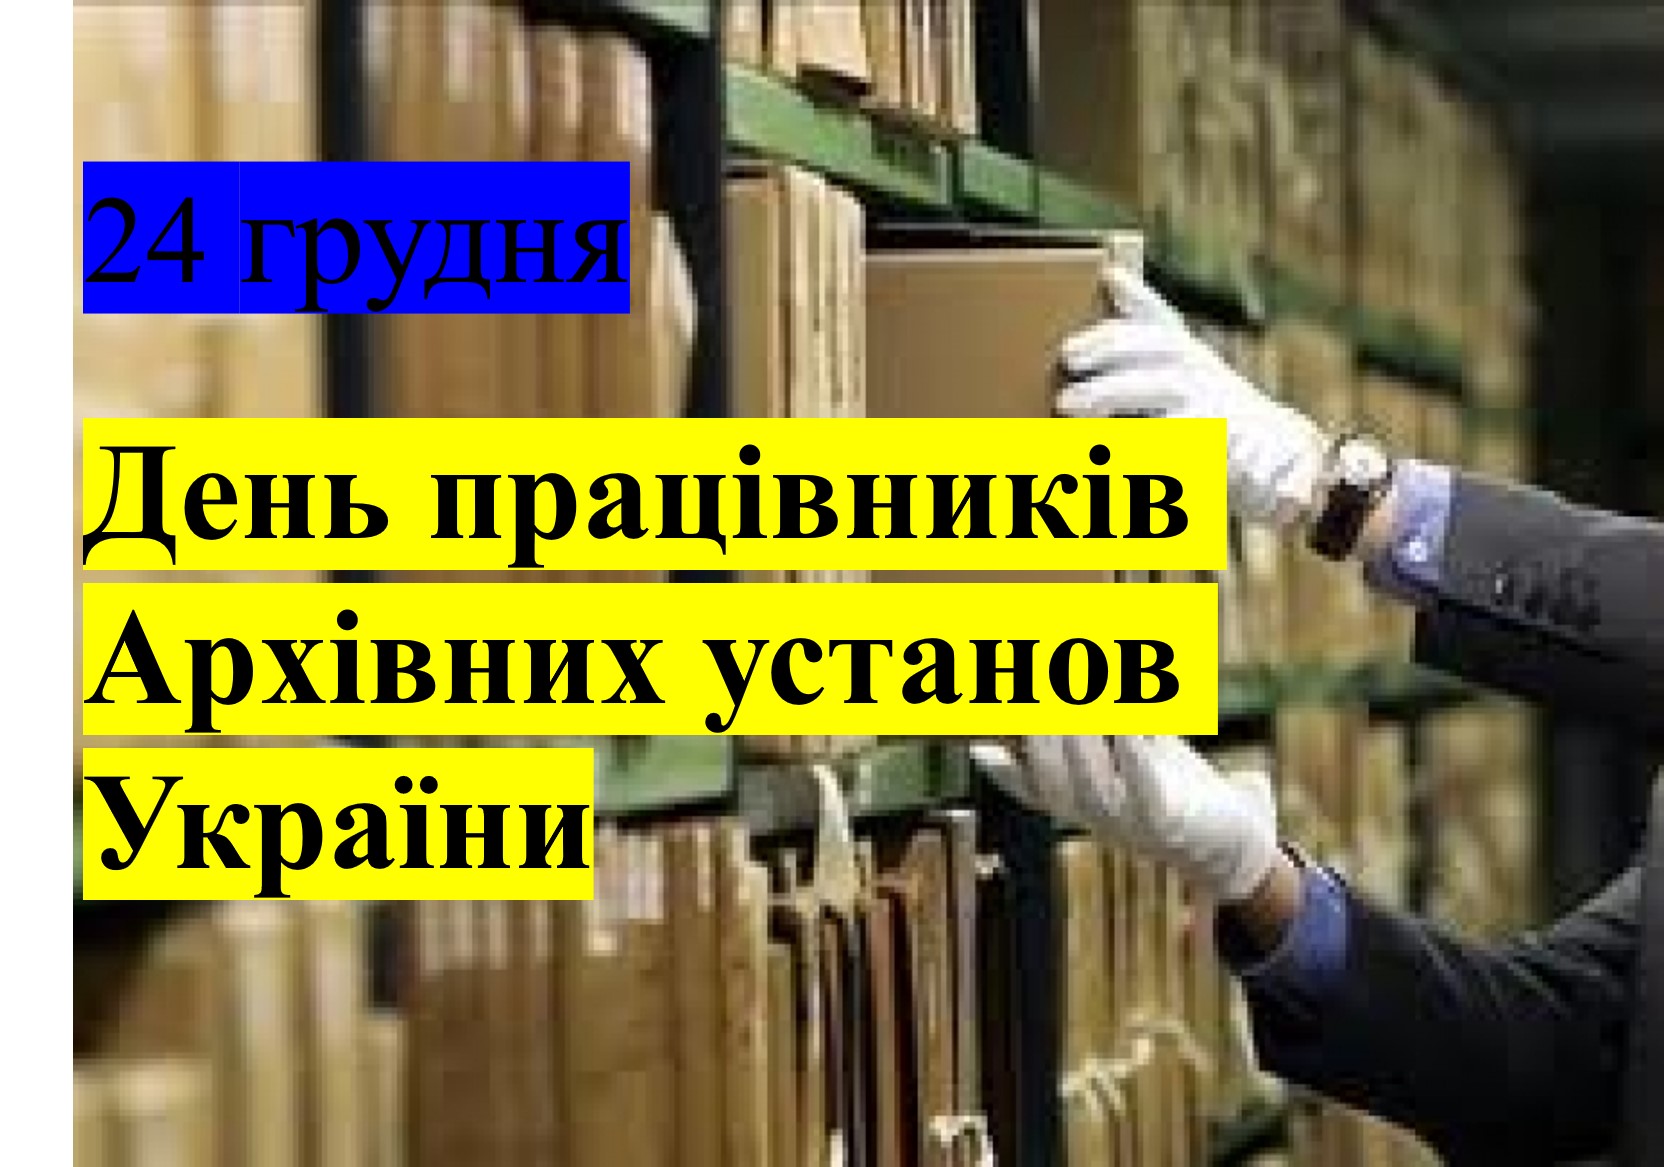 24 грудня в Україні відзначається День працівників архівних установ. -  Коростень - міський інформаційний портал